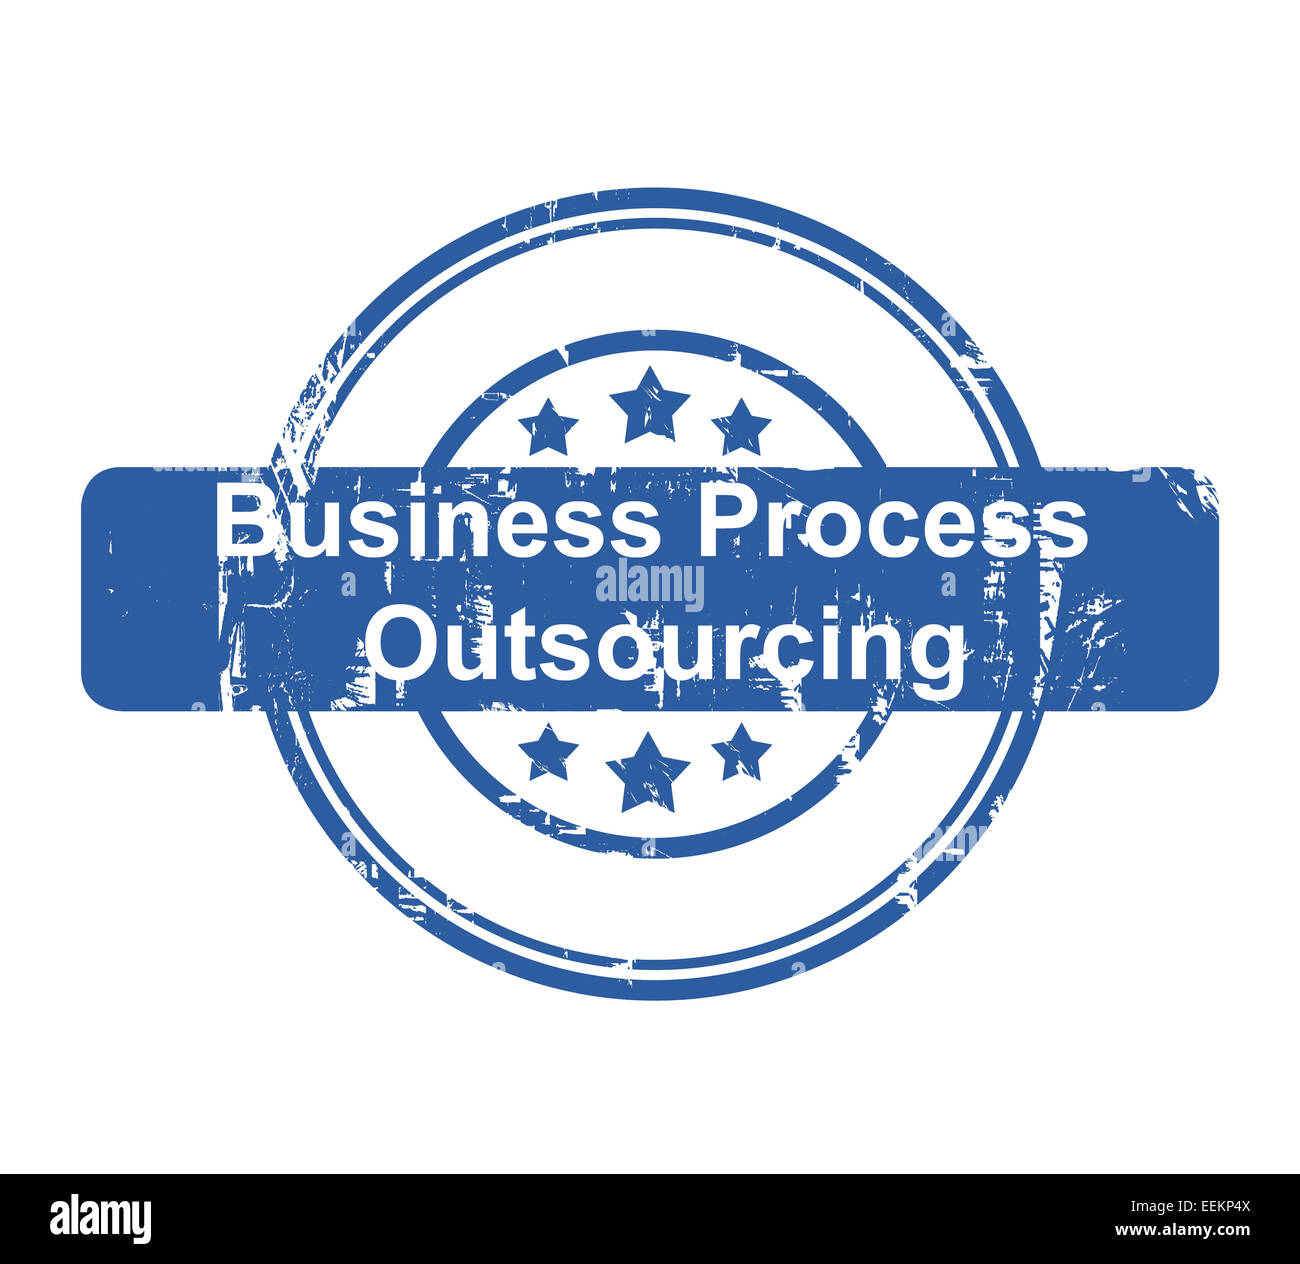 Business Process Outsourcing Konzept Stempel mit Sternen isoliert auf einem weißen Hintergrund. Stockfoto